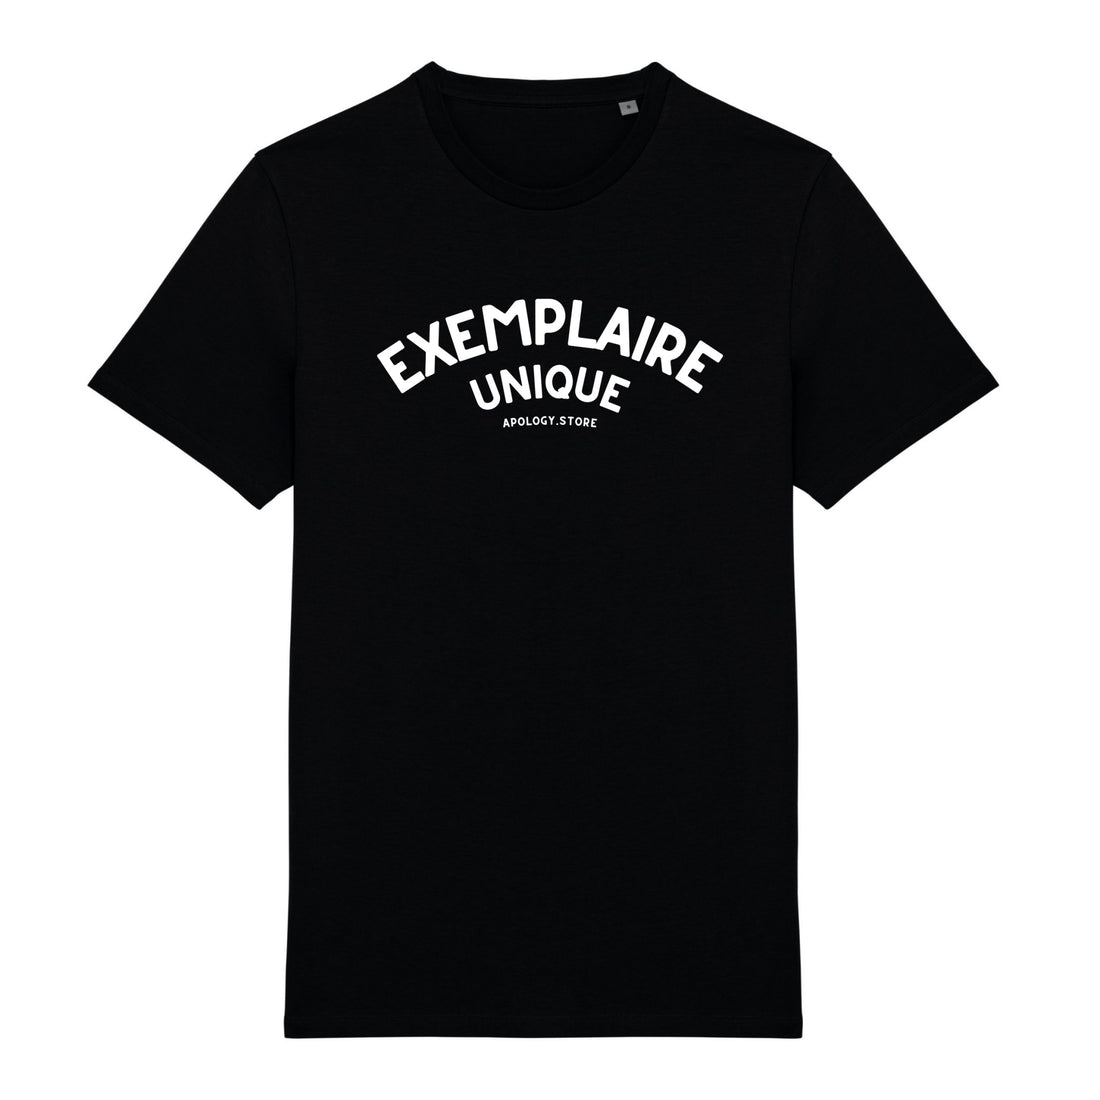 T-shirt Exemplaire Unique - Fabriqué au Portugal XS Noir - Imprimé en France